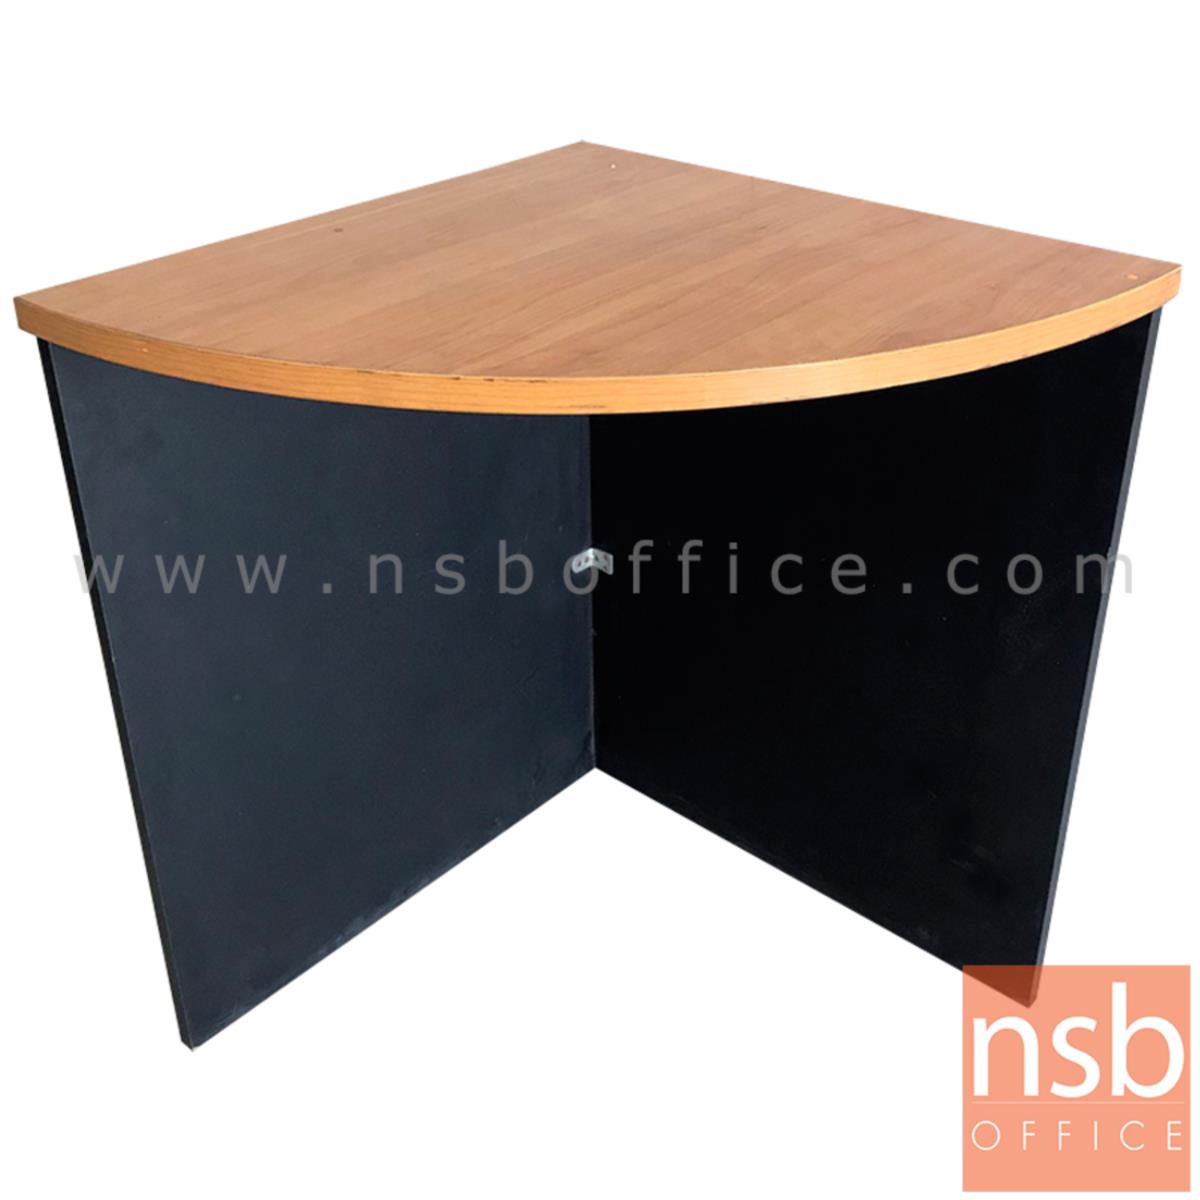 โต๊ะเข้ามุม   ขนาด 60W*75H cm. เมลามีน สีเชอร์รี่ดำ